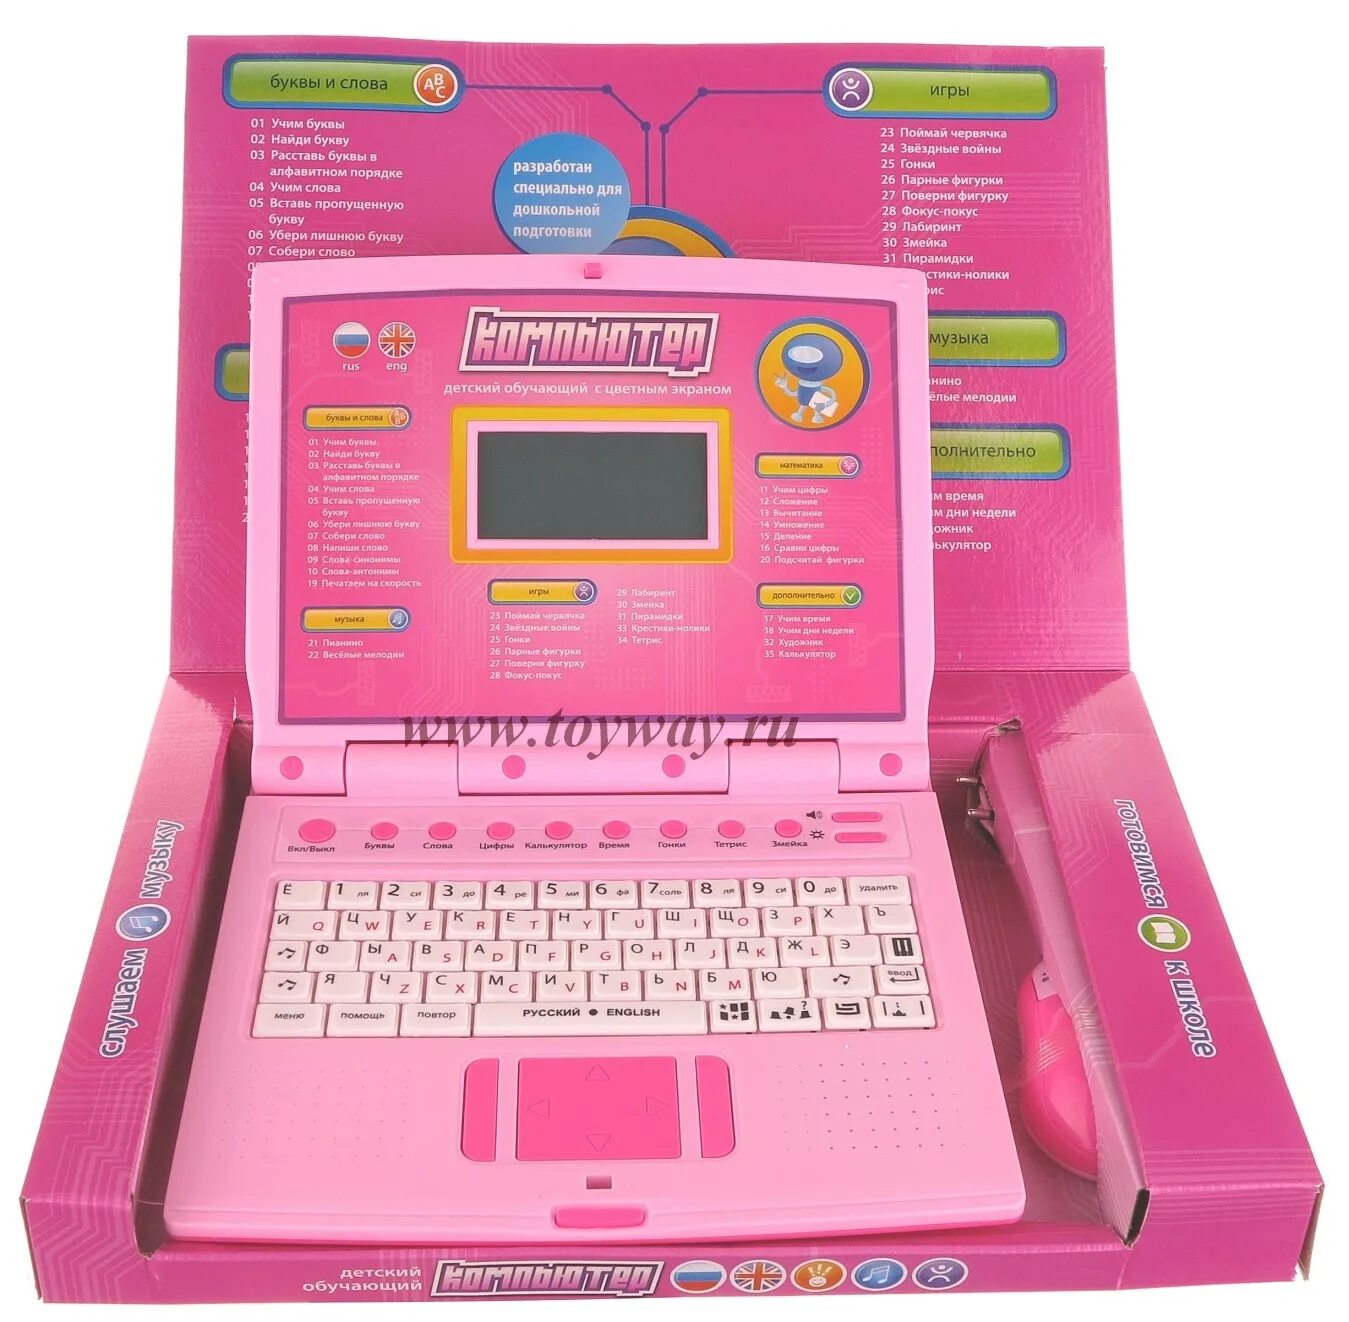 Детские Ноутбуки Joy Toy. Детский компьютер обучающий. Игрушечный компьютер для детей. Детский компьютер розовый.